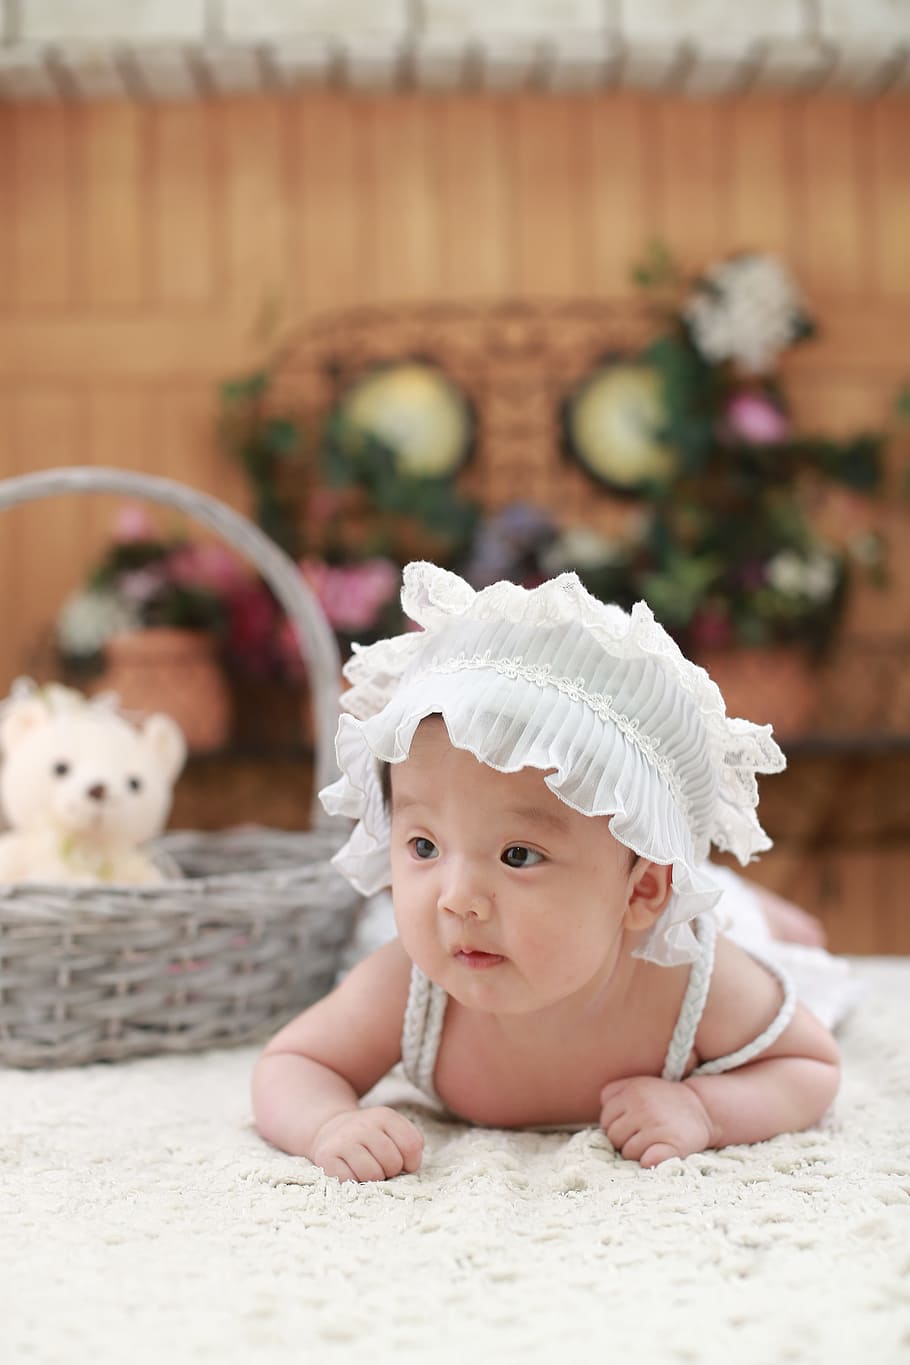 baby wearing white headdress beside gray wicker basket, Cute